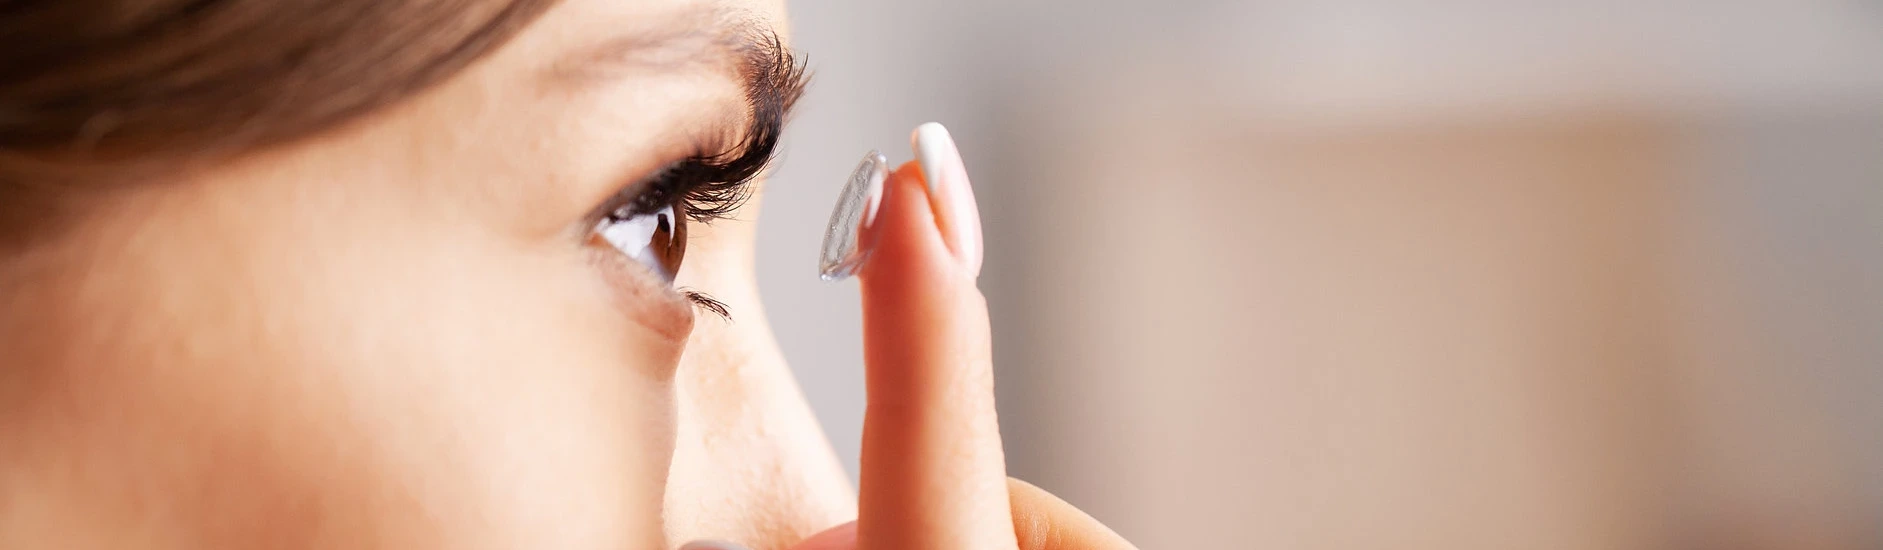 vkladanie kontaktnej šošovky do oka